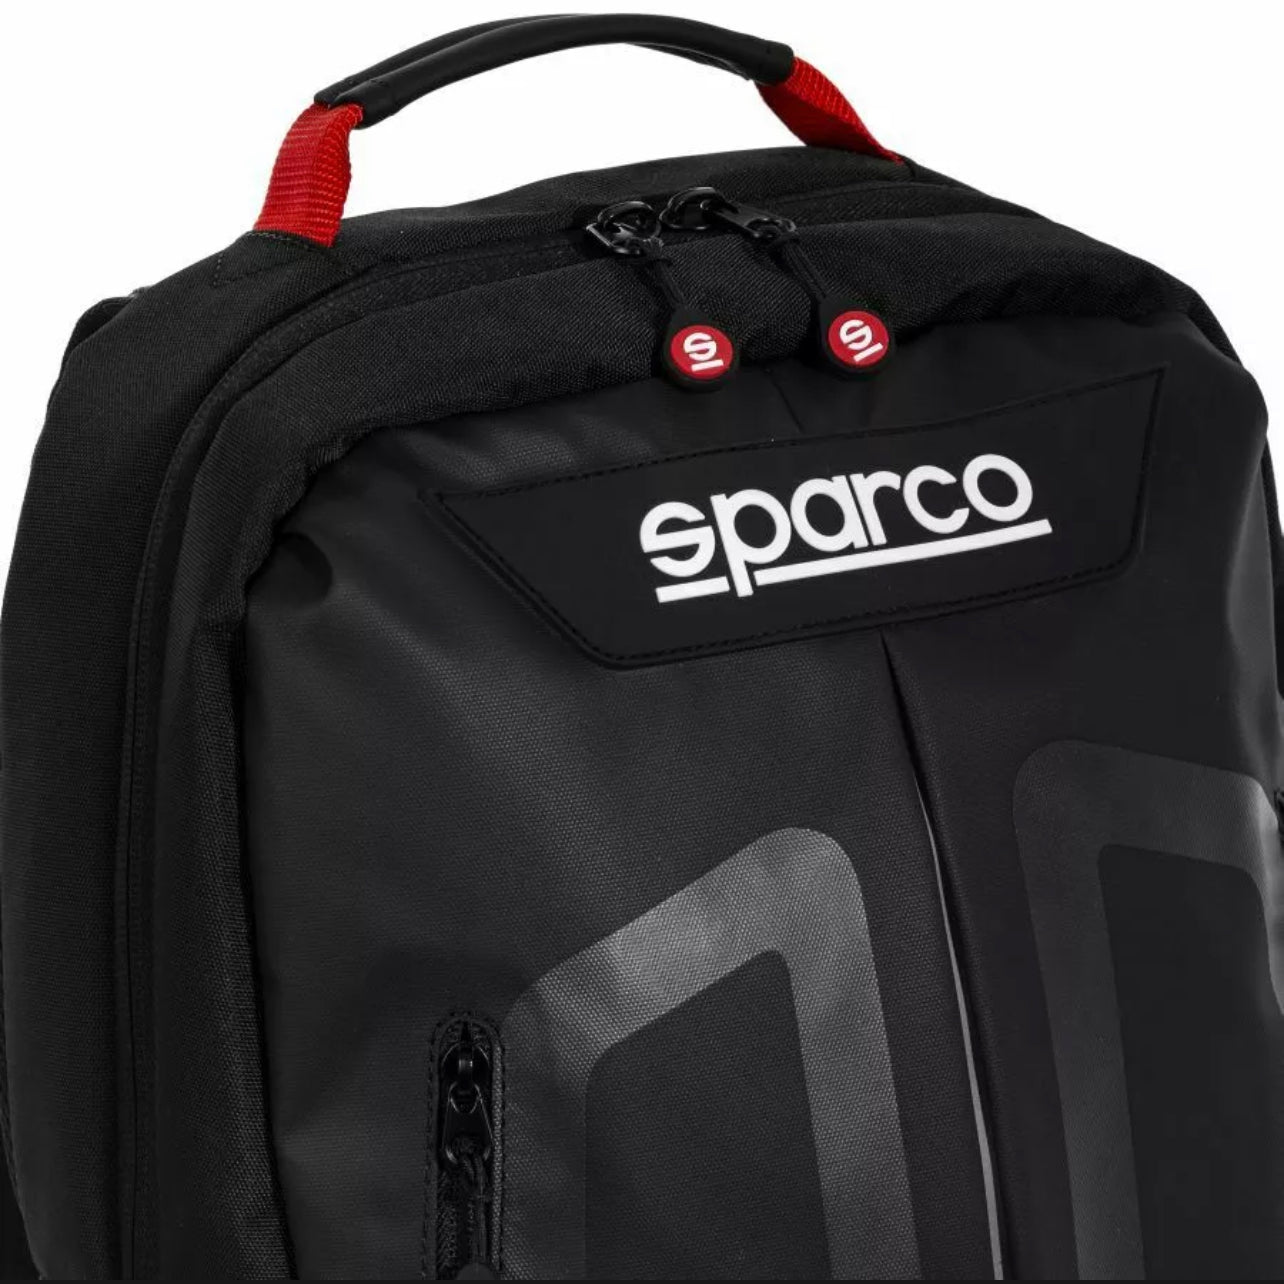 Zaino Sparco Motorsport Stage Nero/Rosso Capacità 15L per laptop da 15"Perfetto anche per la scuola!!